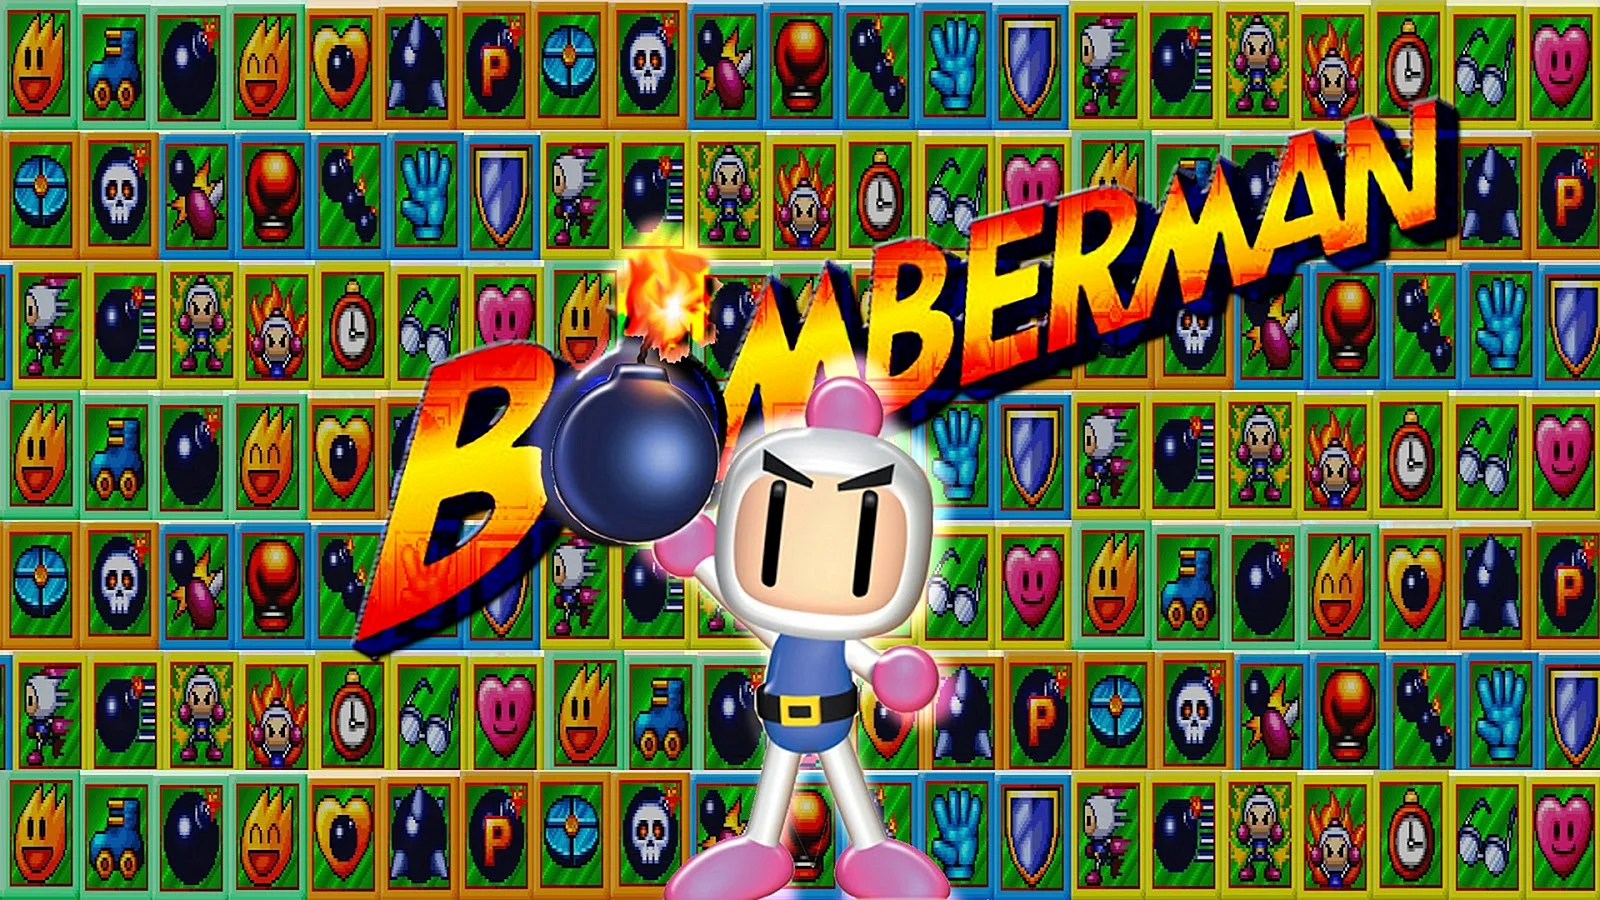 Super Bomberman Panic Bomber w Wallpaper